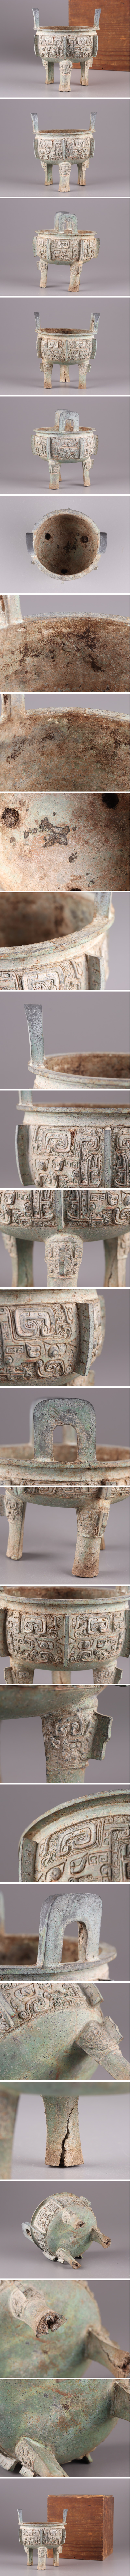 激安新作中国古玩 唐物 西周期 青銅器 発掘 饕餮紋 香炉 古作 時代物 極上品 初だし品 3525 その他